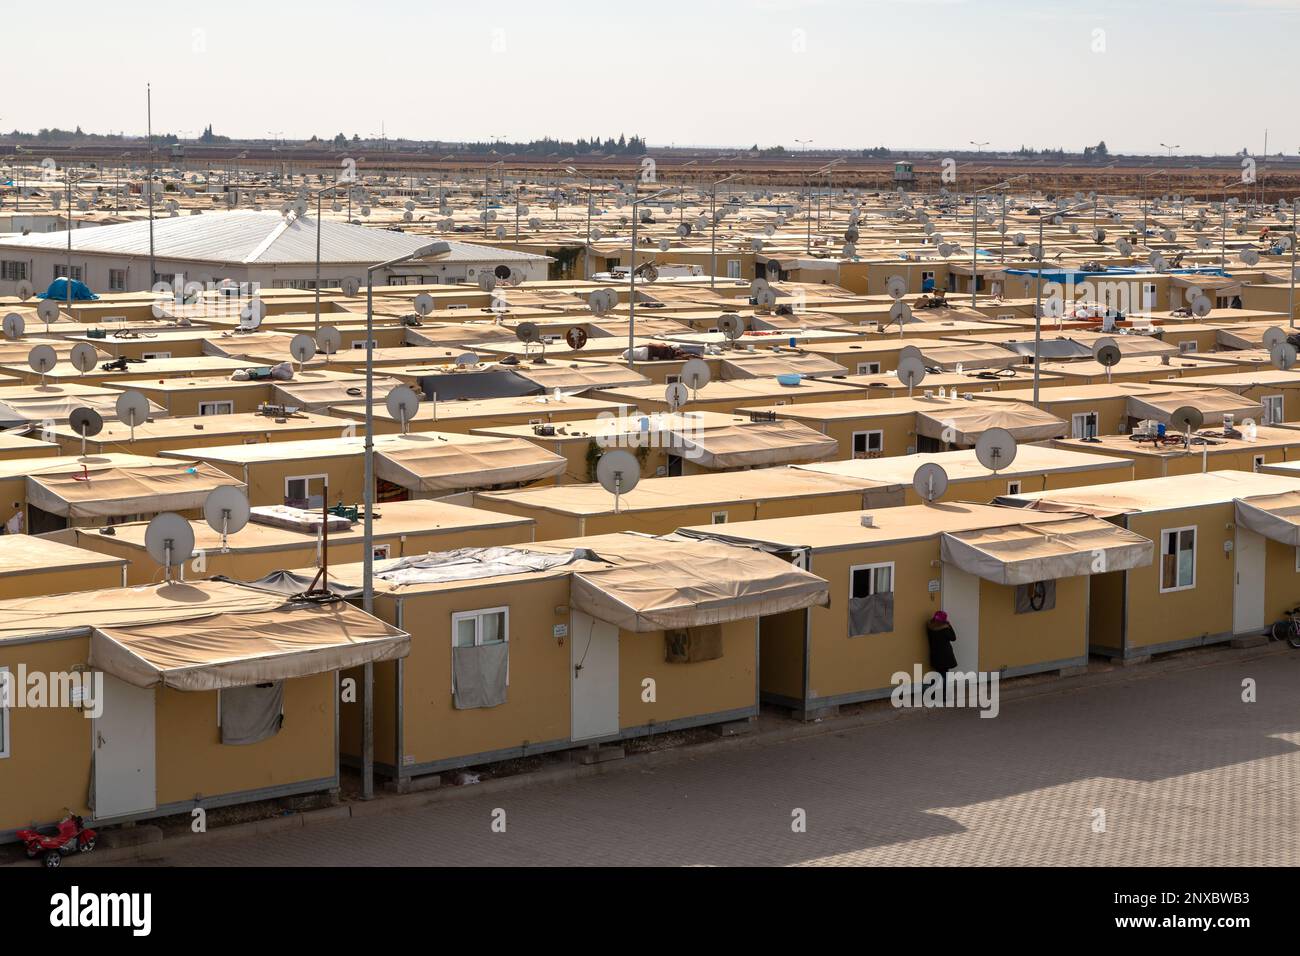 Elbeyli Temporary Accommodation Center in Kilis, Türkei, vorbereitet für syrische Flüchtlinge, die vor dem Krieg fliehen. Elbeyli, Kilis, Türkei-18. November 2015. Stockfoto